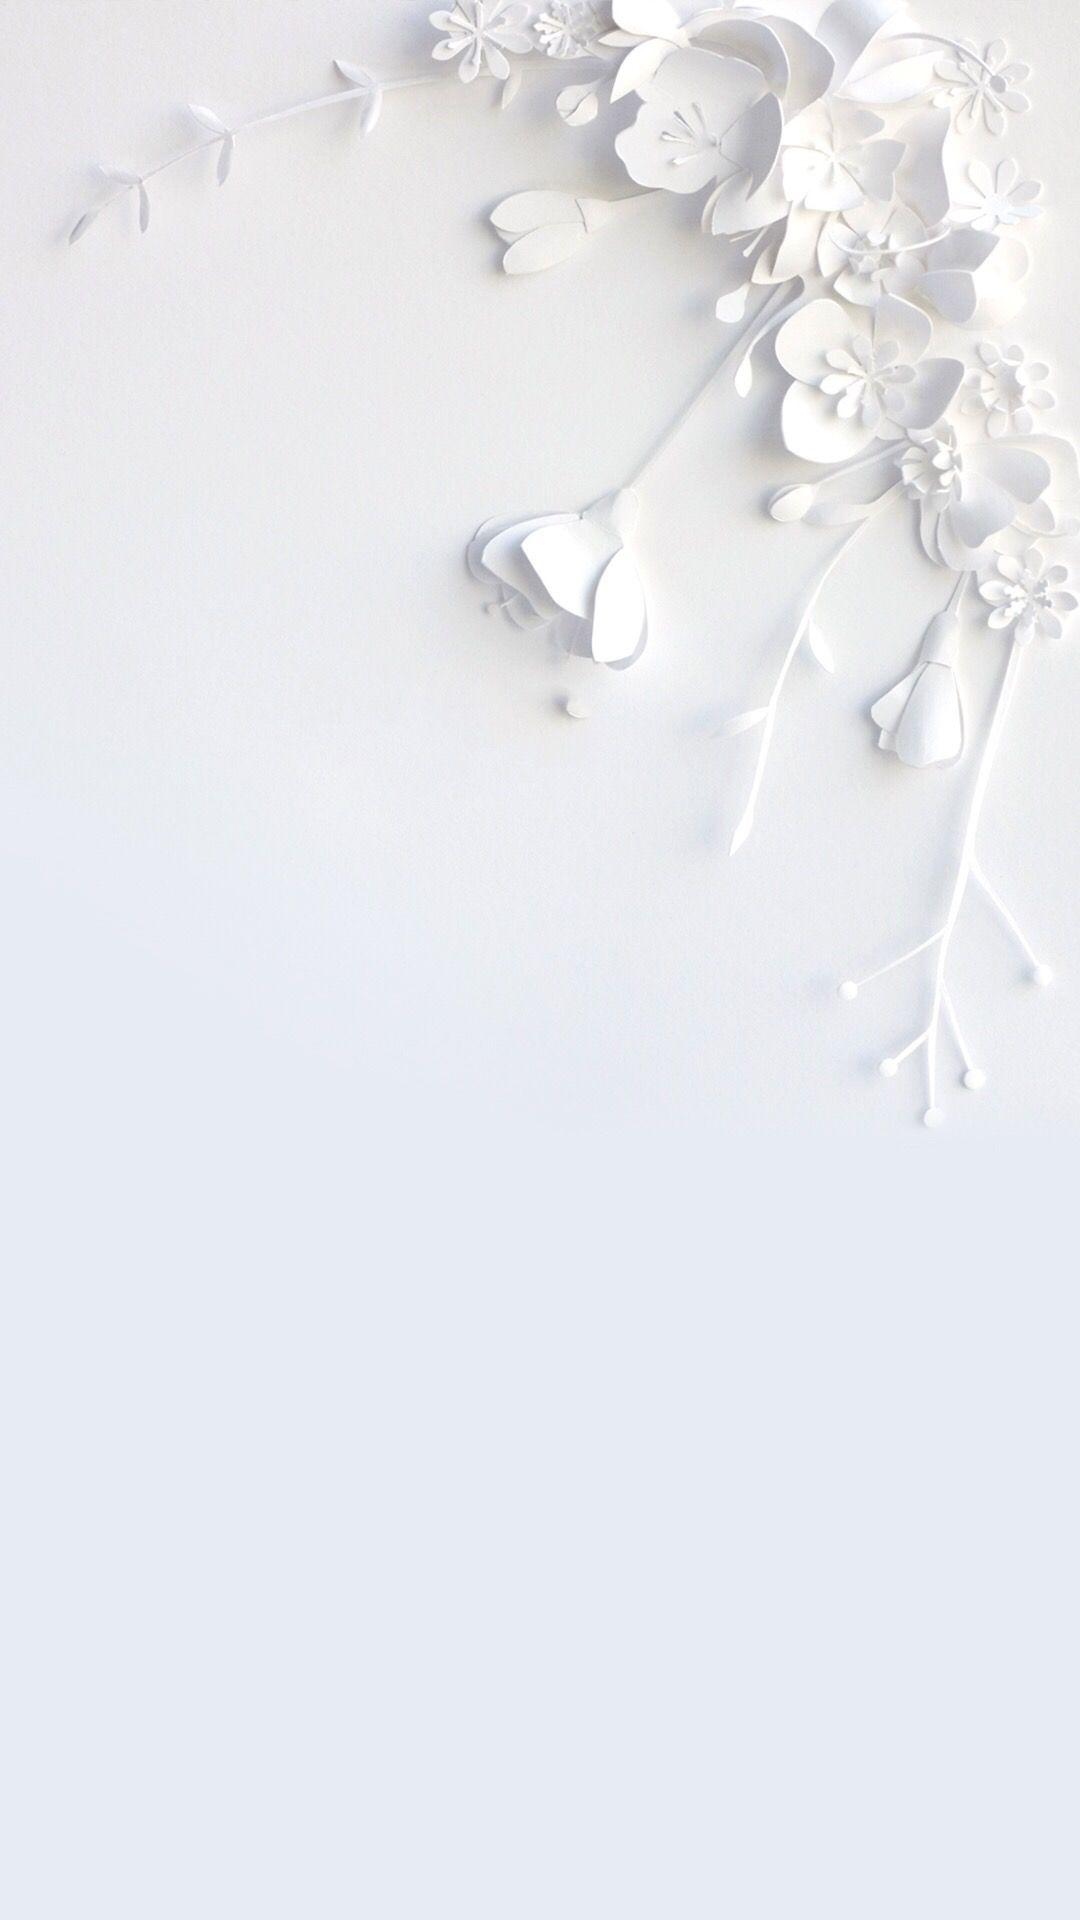 White flower wallpaper. Wallpaper!. iPhone